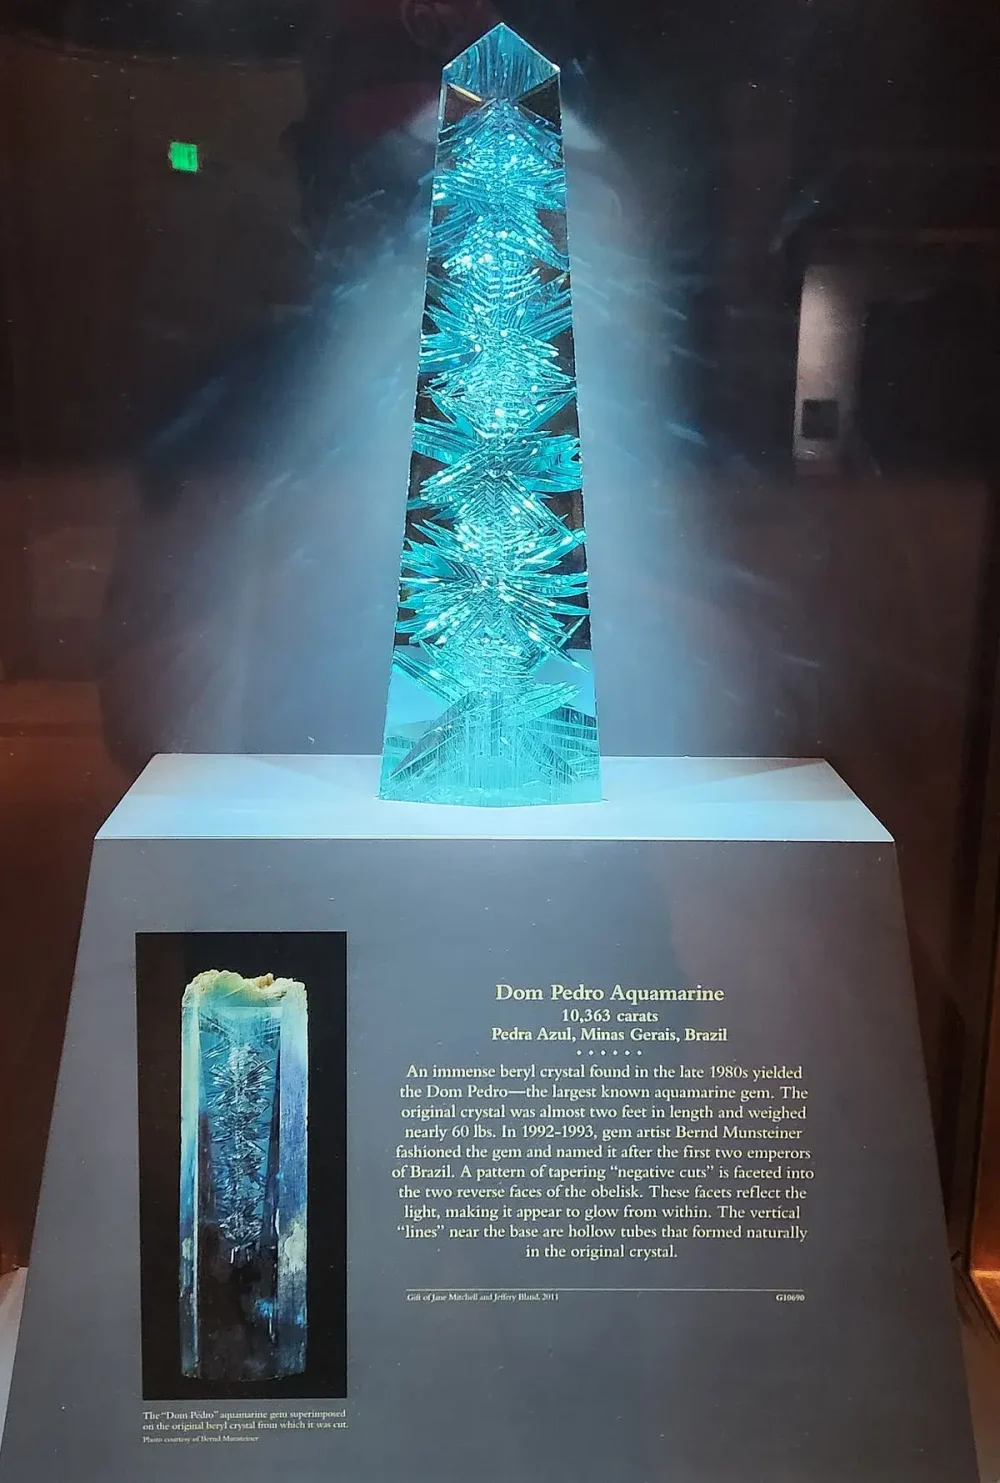 The Dom Pedro aquamarine is the world's largest cut aquamarine gem